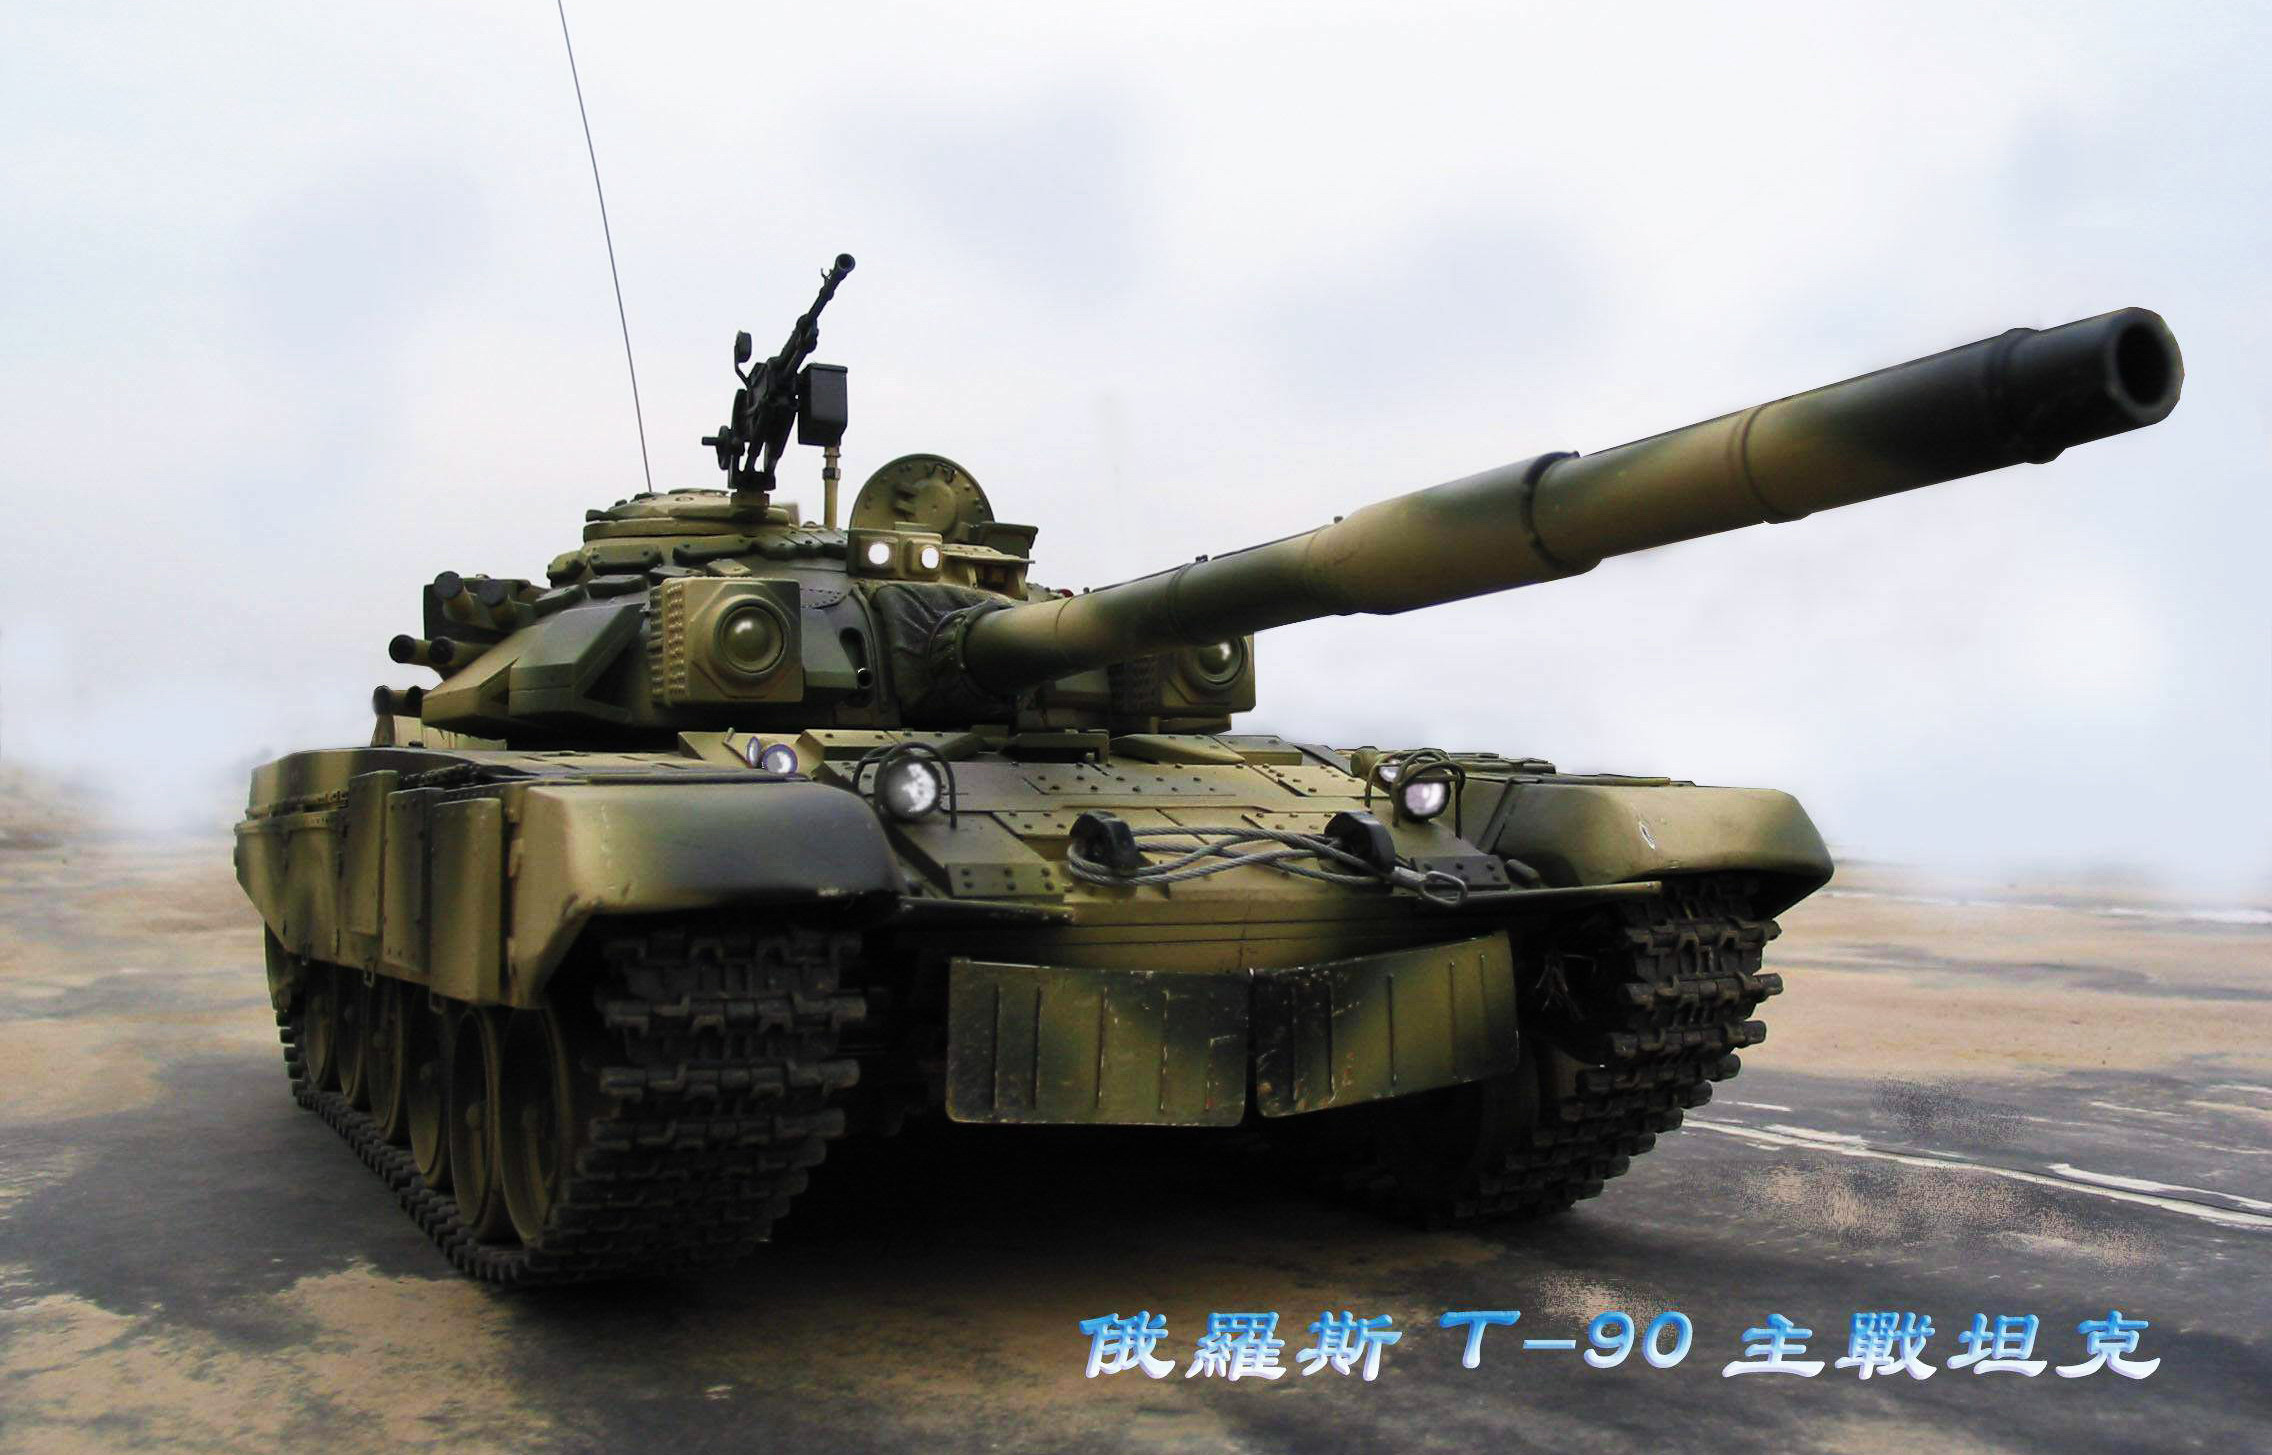 仿真坦克模型   全电动 仿真大炮模型,战车模型制作 作者:模鬼将军 3383 